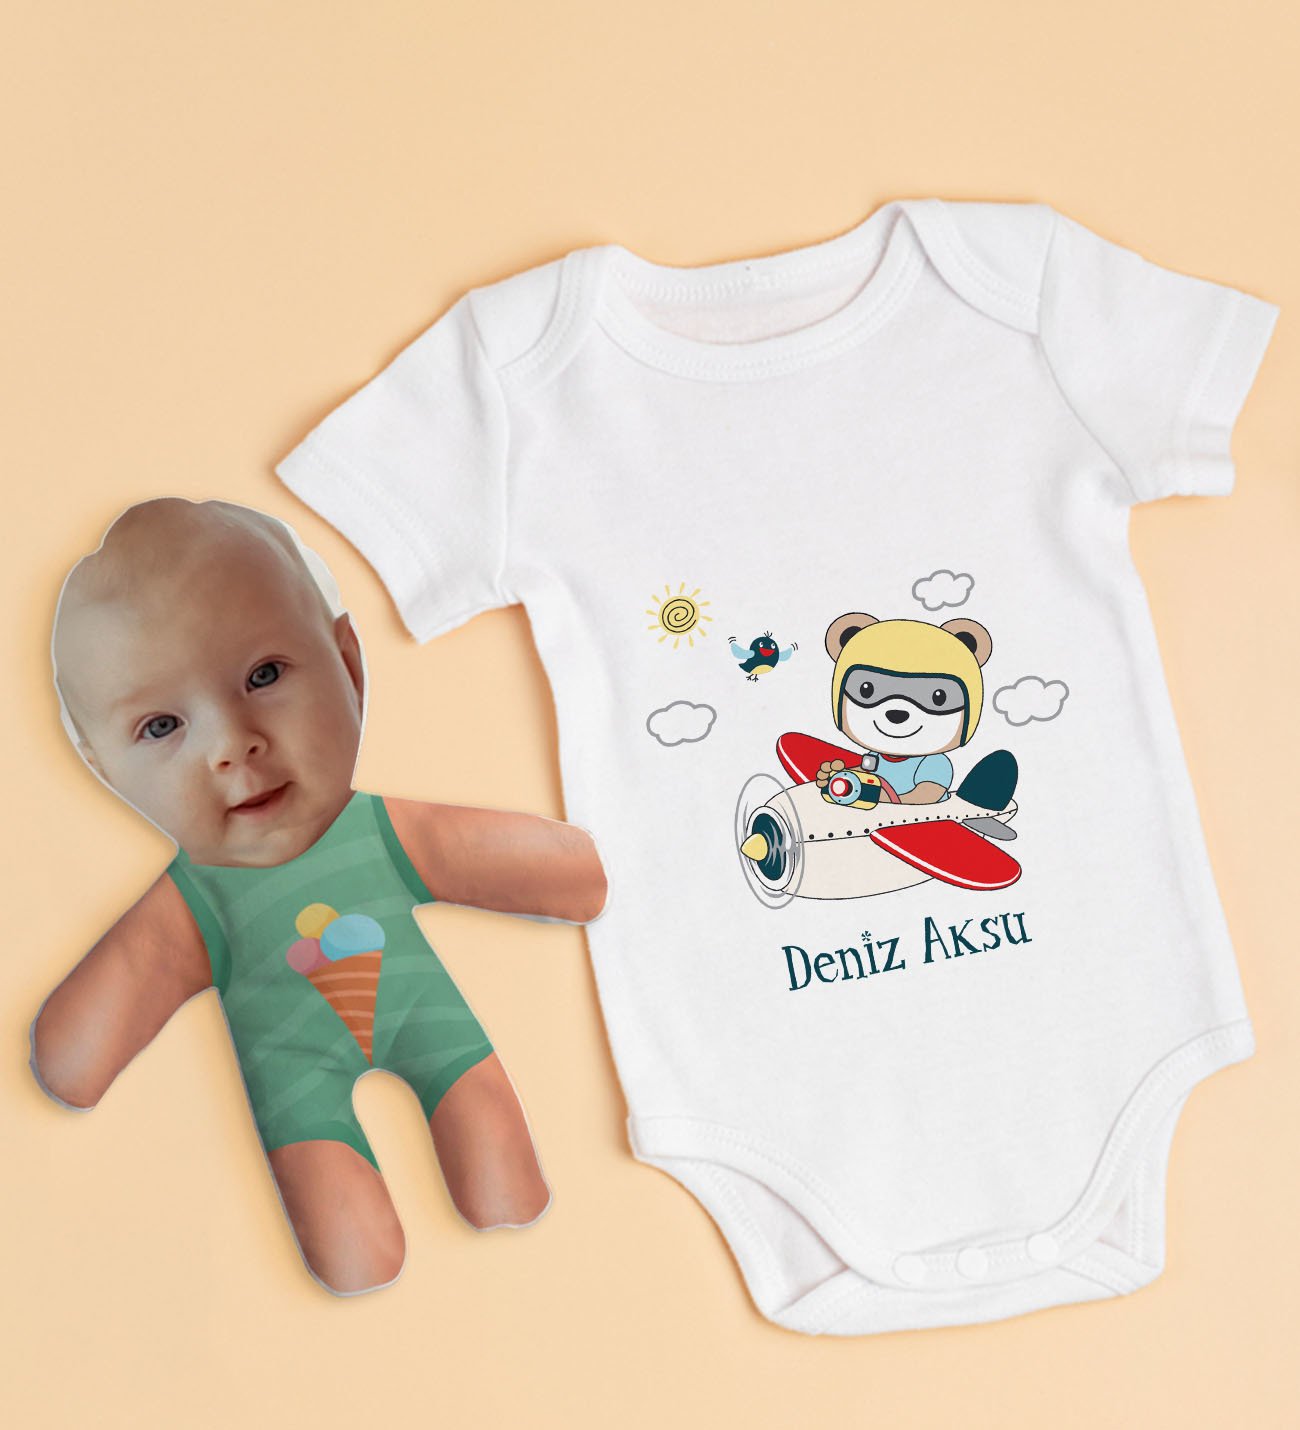 BK Kids Kişiye Özel Fotoğraflı Bebek Yastık ve Bebek Body Zıbın Hediye Seti - Model 52